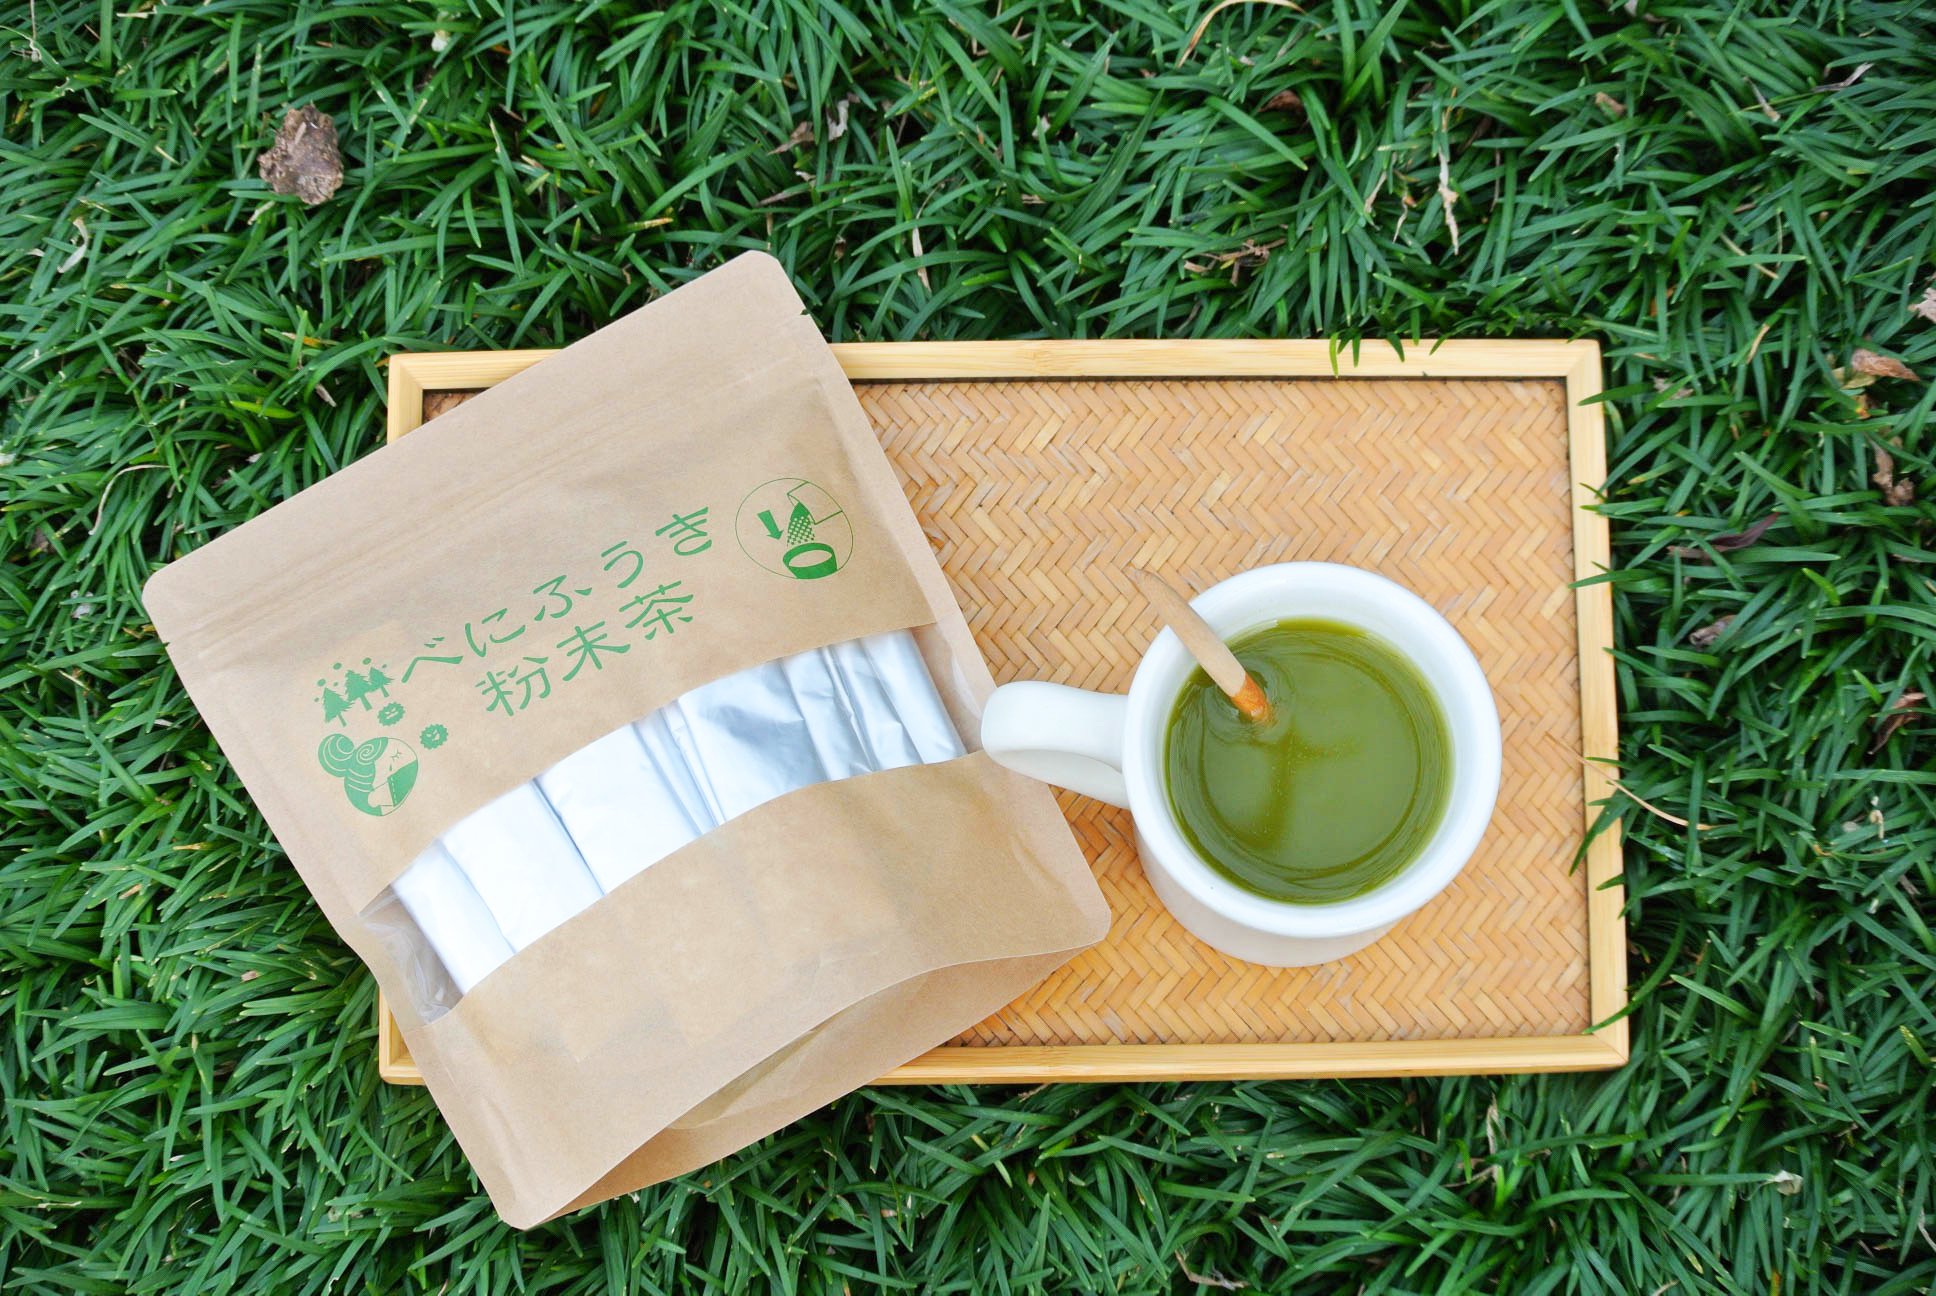 べにふうき,緑茶,抹茶,粉末タイプ,粉末茶,日本茶,新緑園,美味しいお茶,カテキン